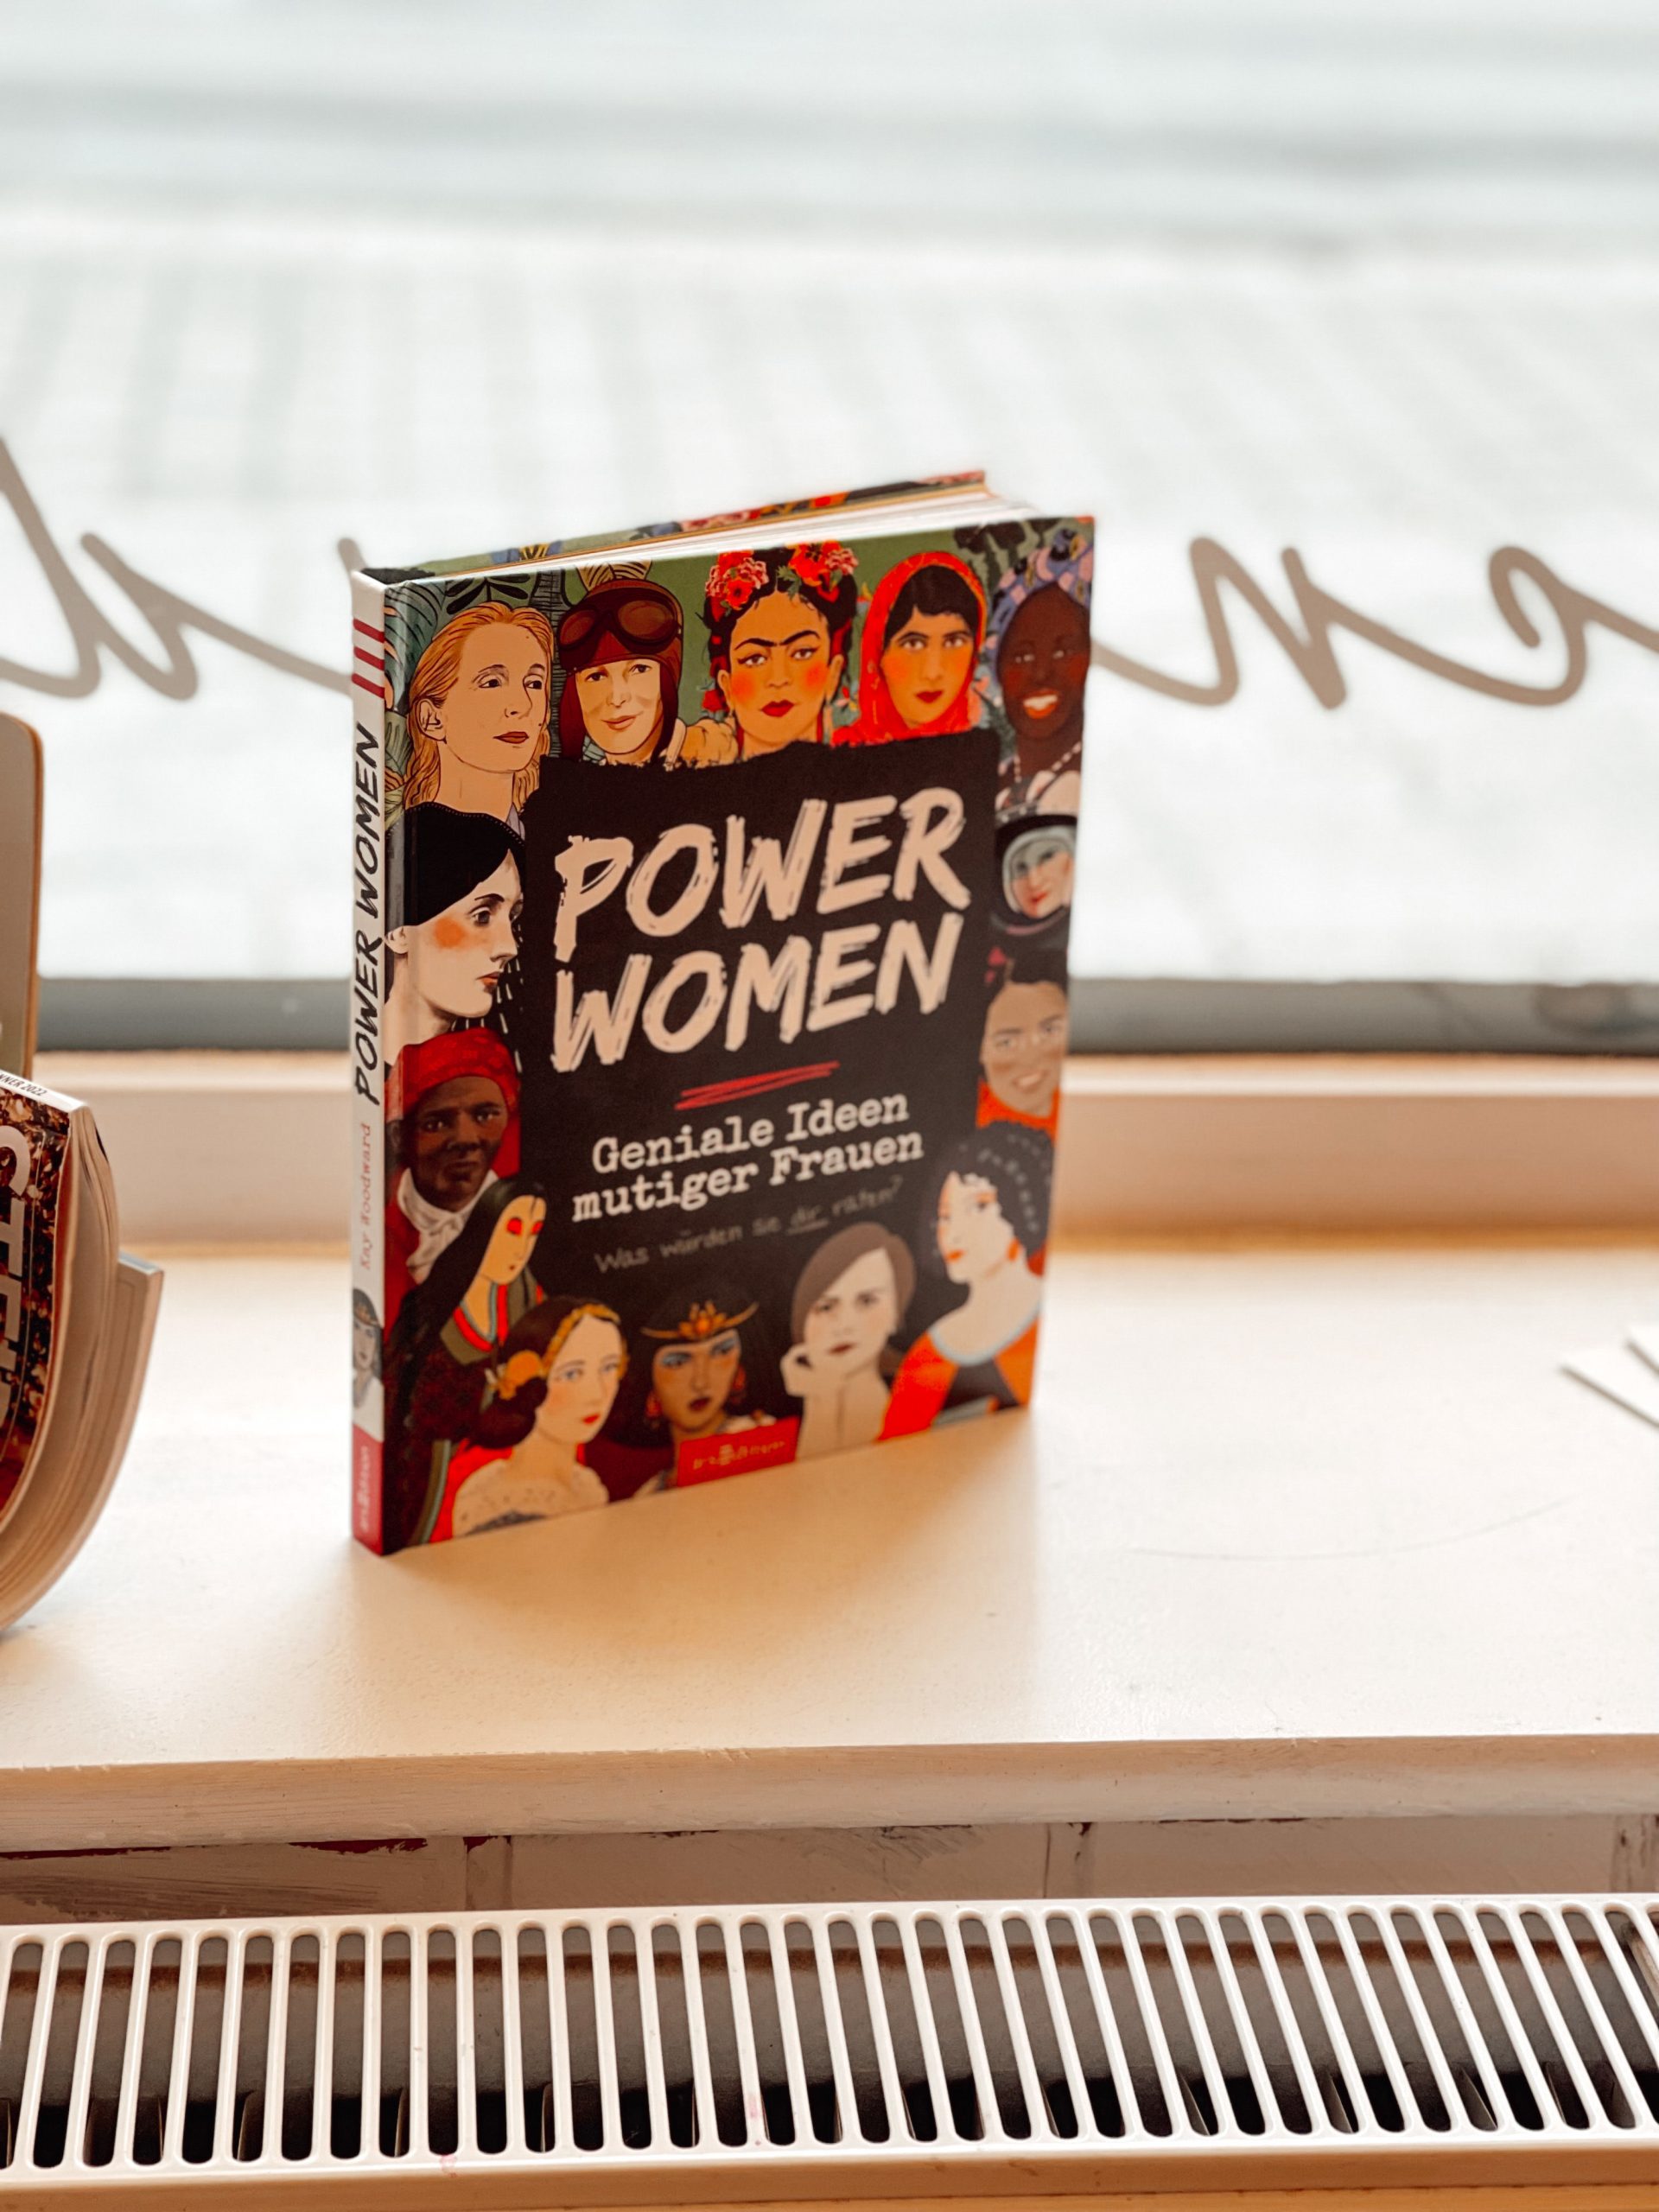 Buch "Power Women - geniale Ideen mutiger Frauen"